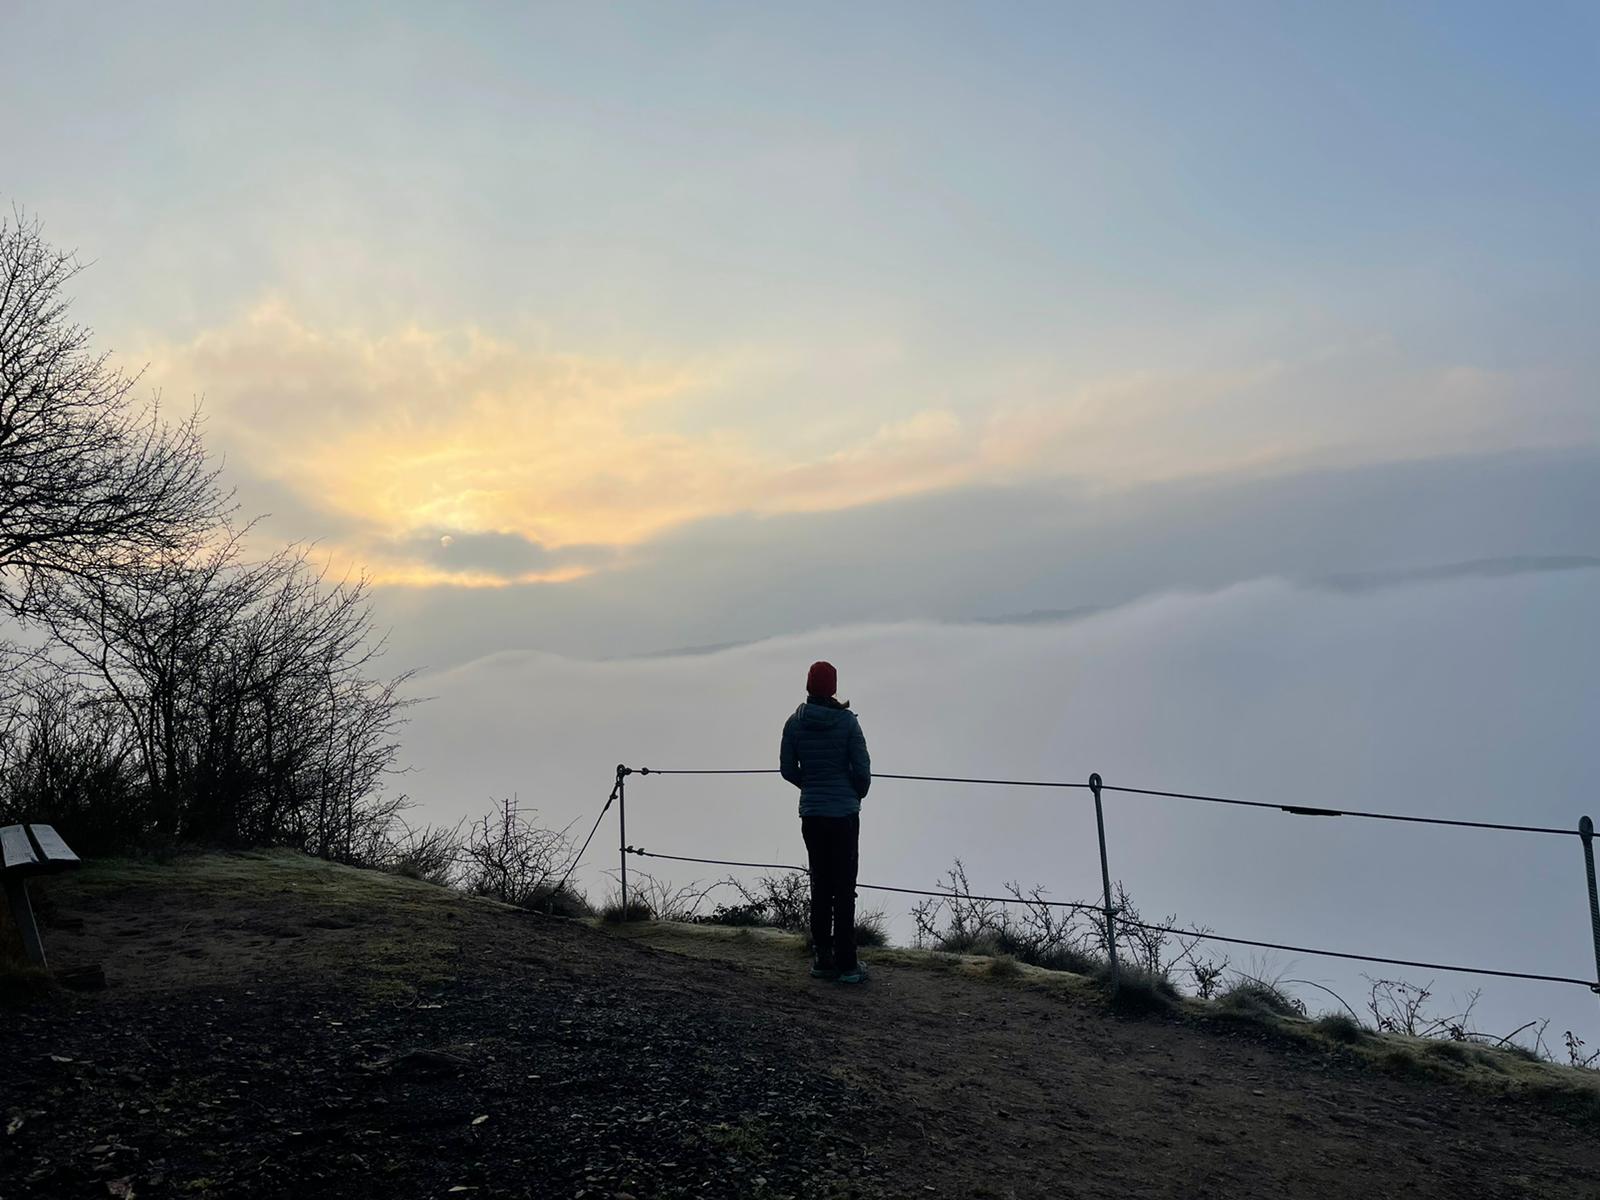 Sonnenaufgang über dem Wolkenmeer beim Trekking auf dem Moselsteig – jetzt mehr lesen im Blogbeitrag von Roaming for roots